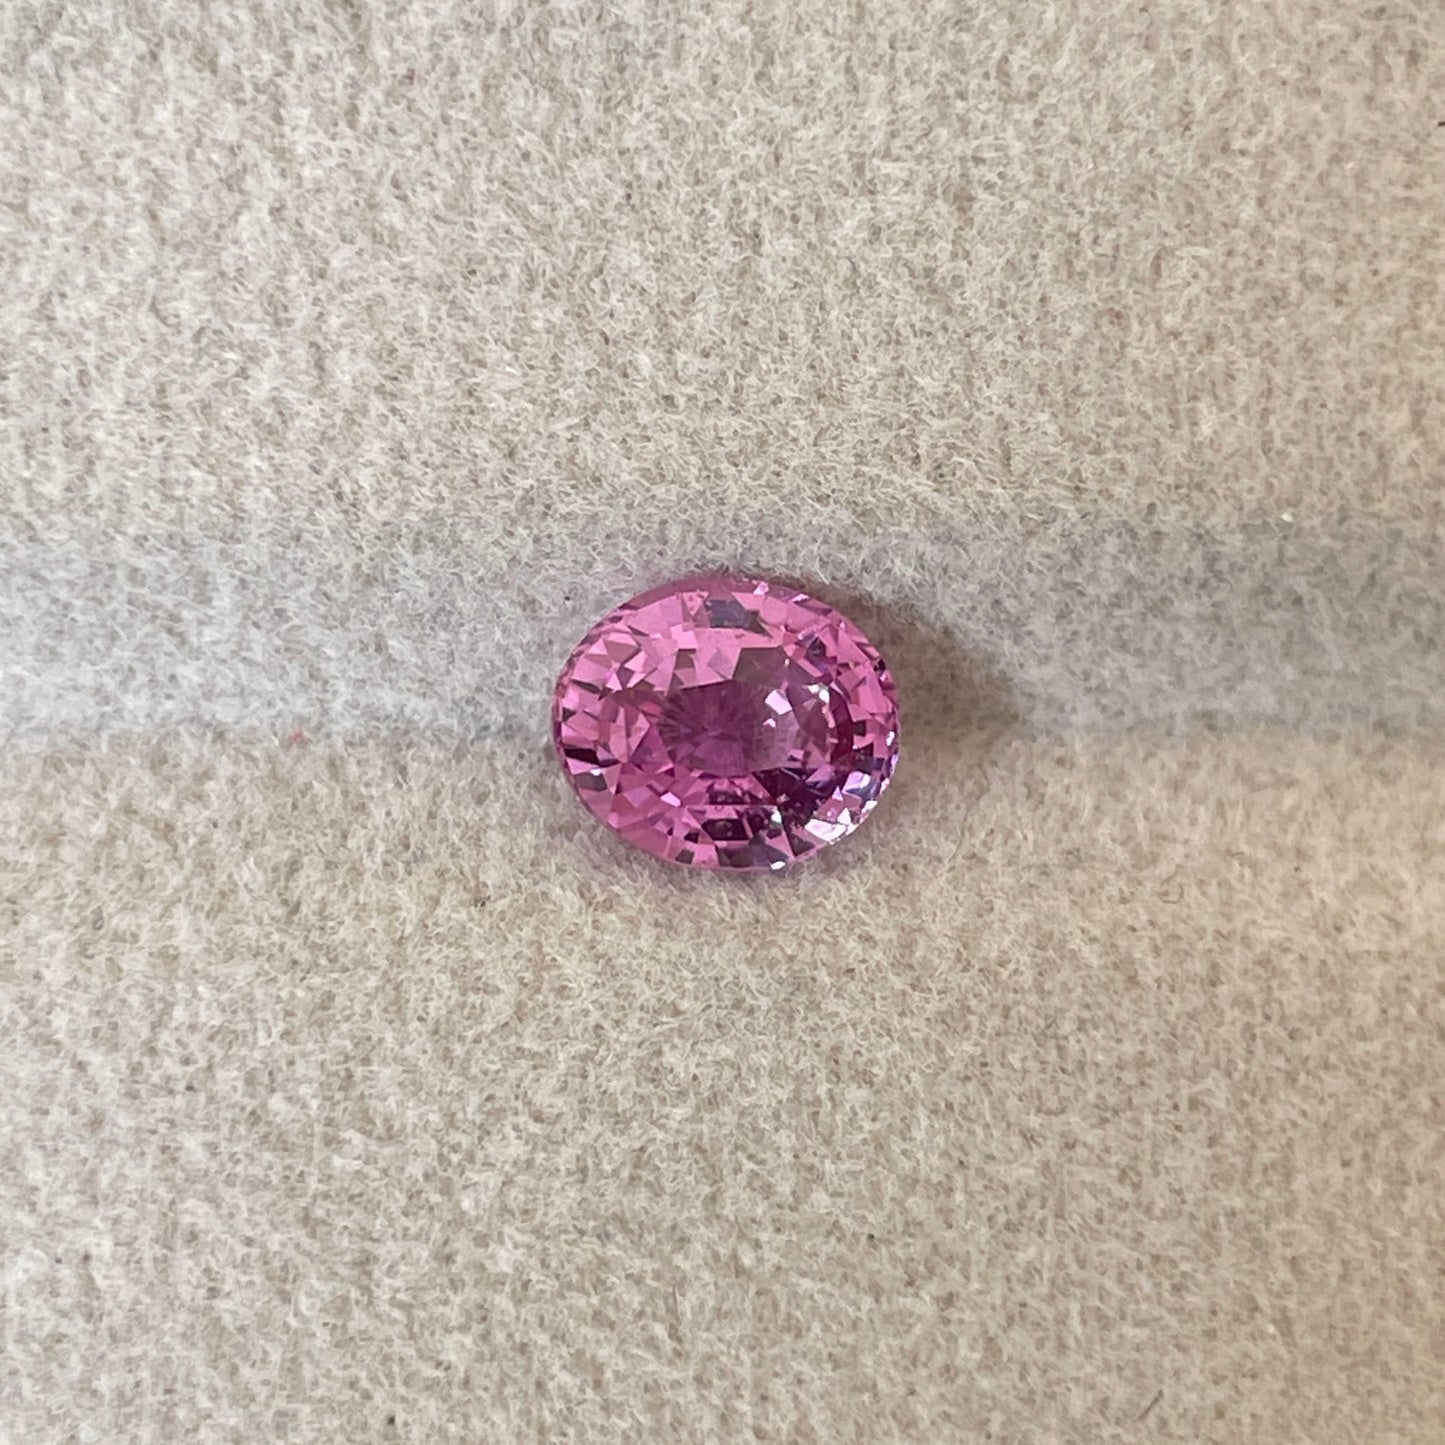 1.11 crt natural Pink Sapphire